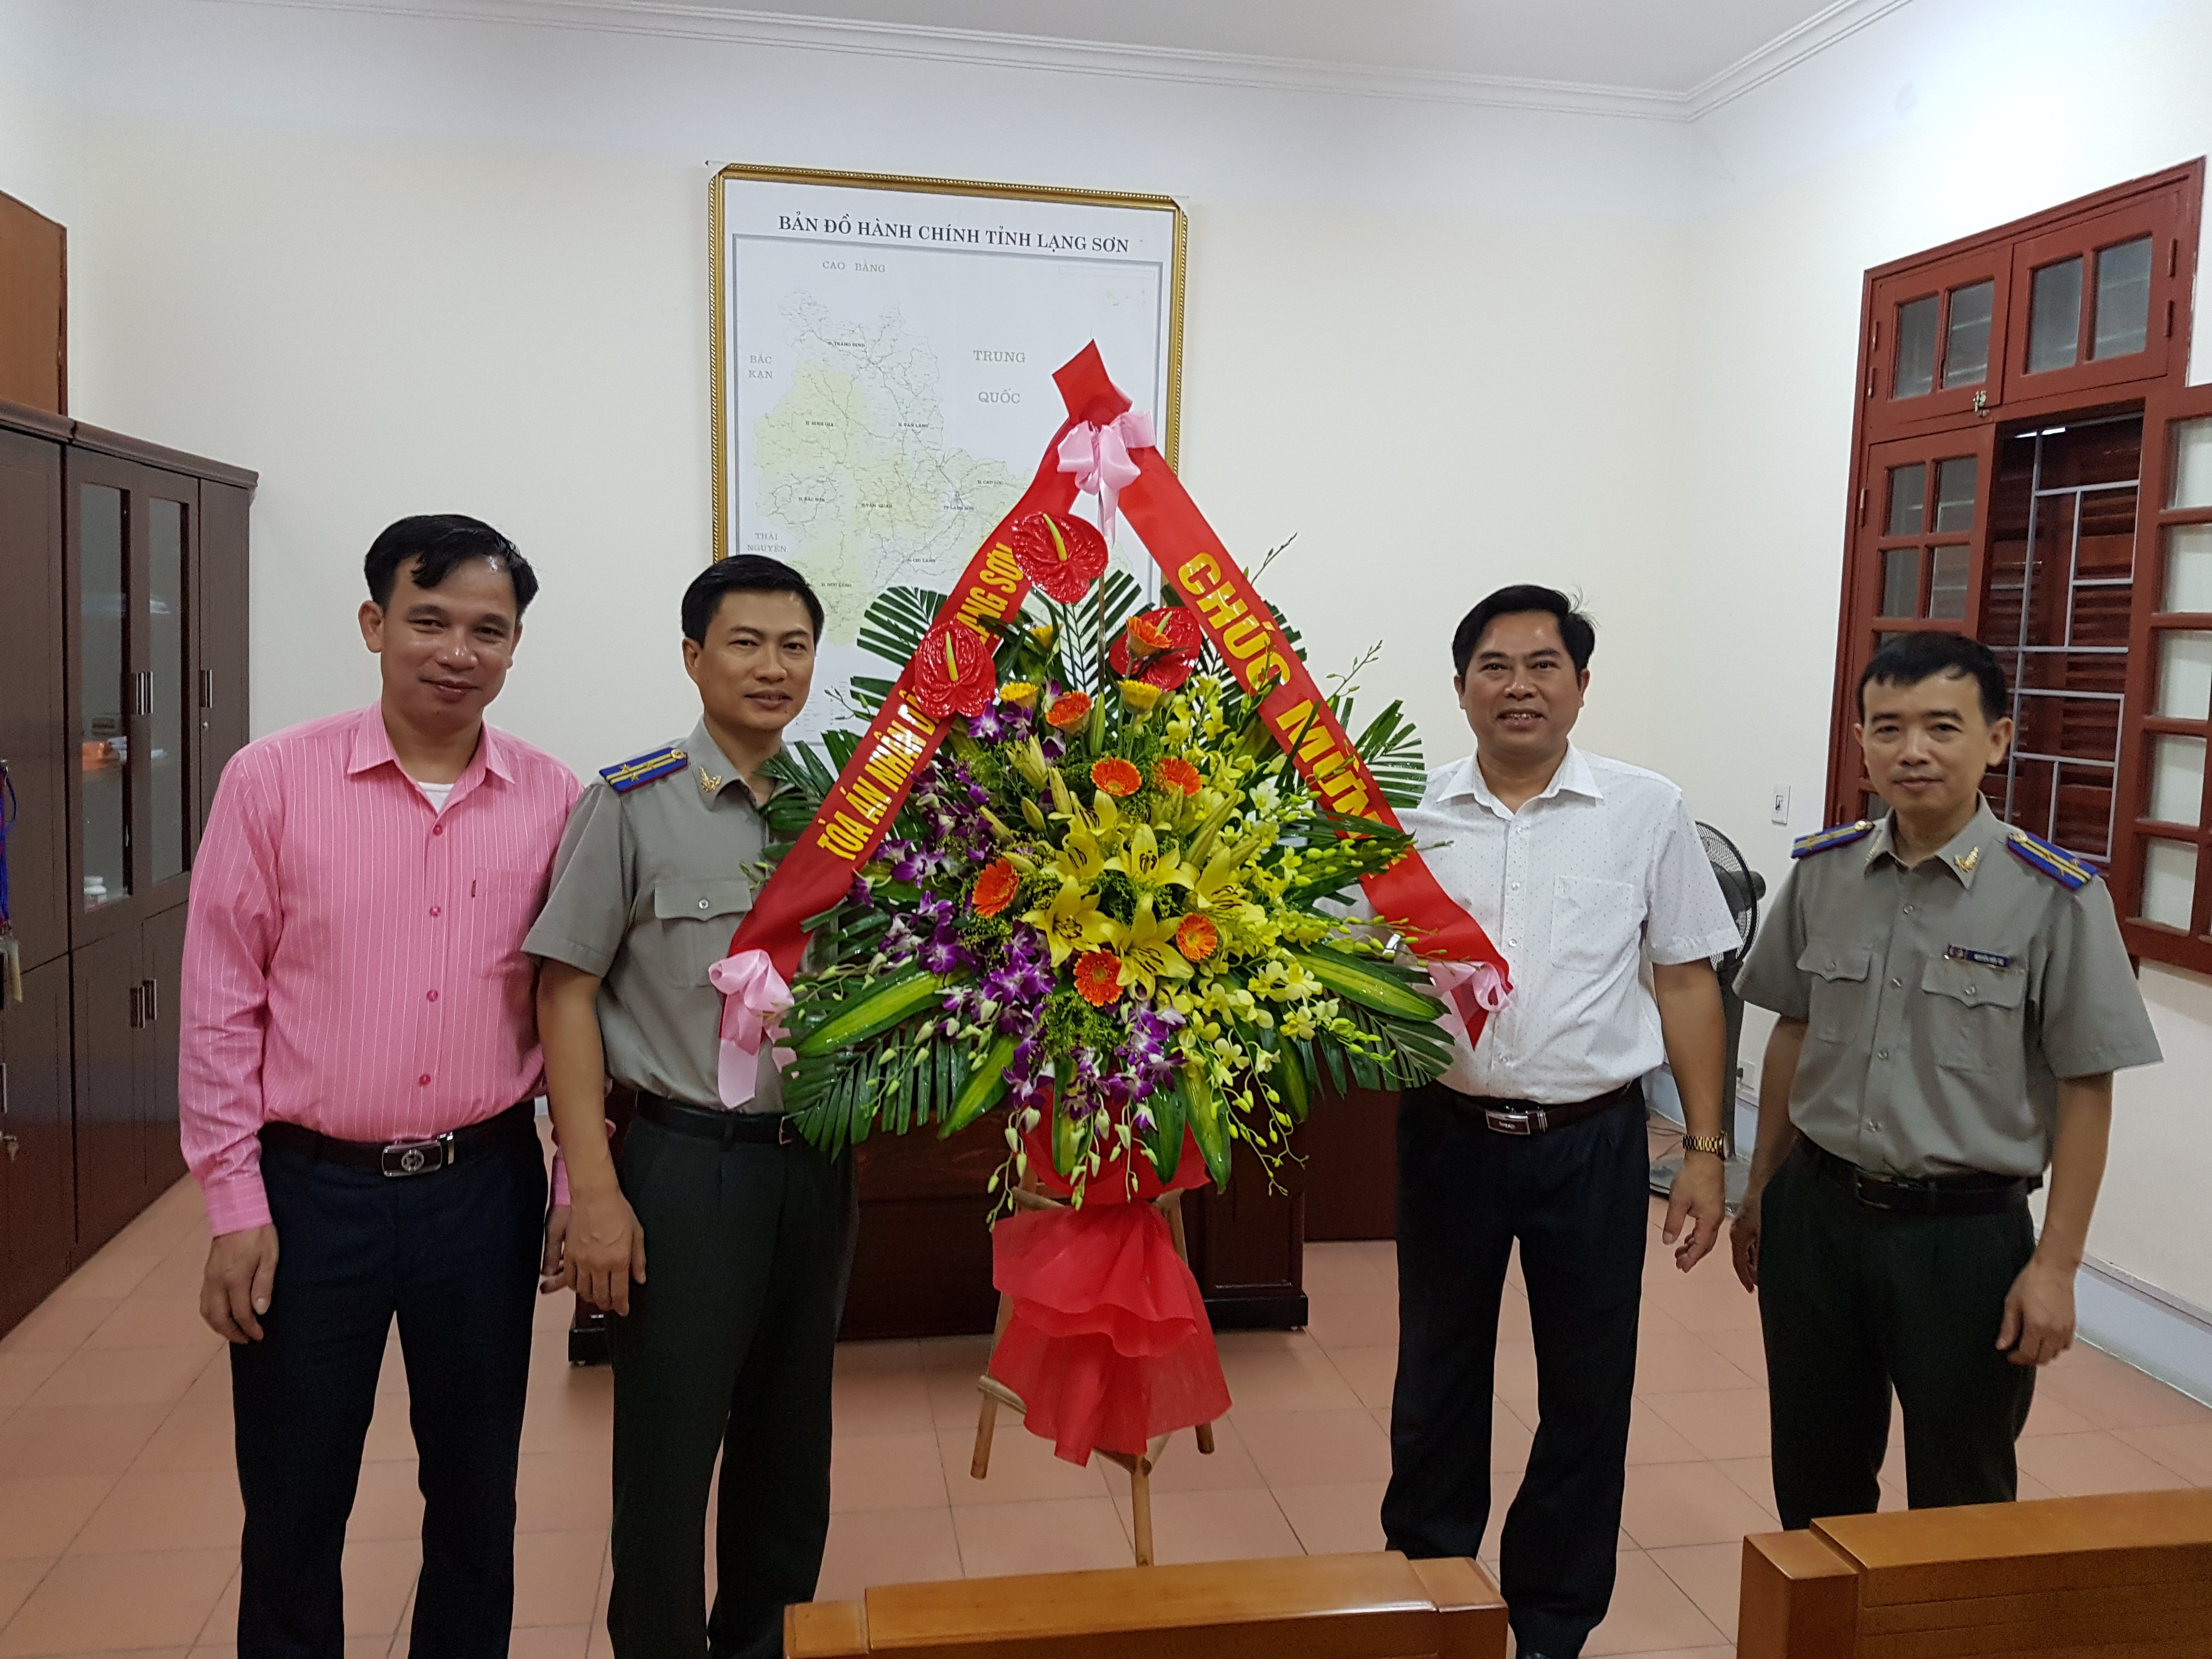 Lạng Sơn tổ chức các hoạt động Chào mừng kỷ niệm 72 năm ngày Truyền thống Thi hành án dân sự (19/7/1946 - 19/7/2018) và 25 năm chuyển giao công tác THADS